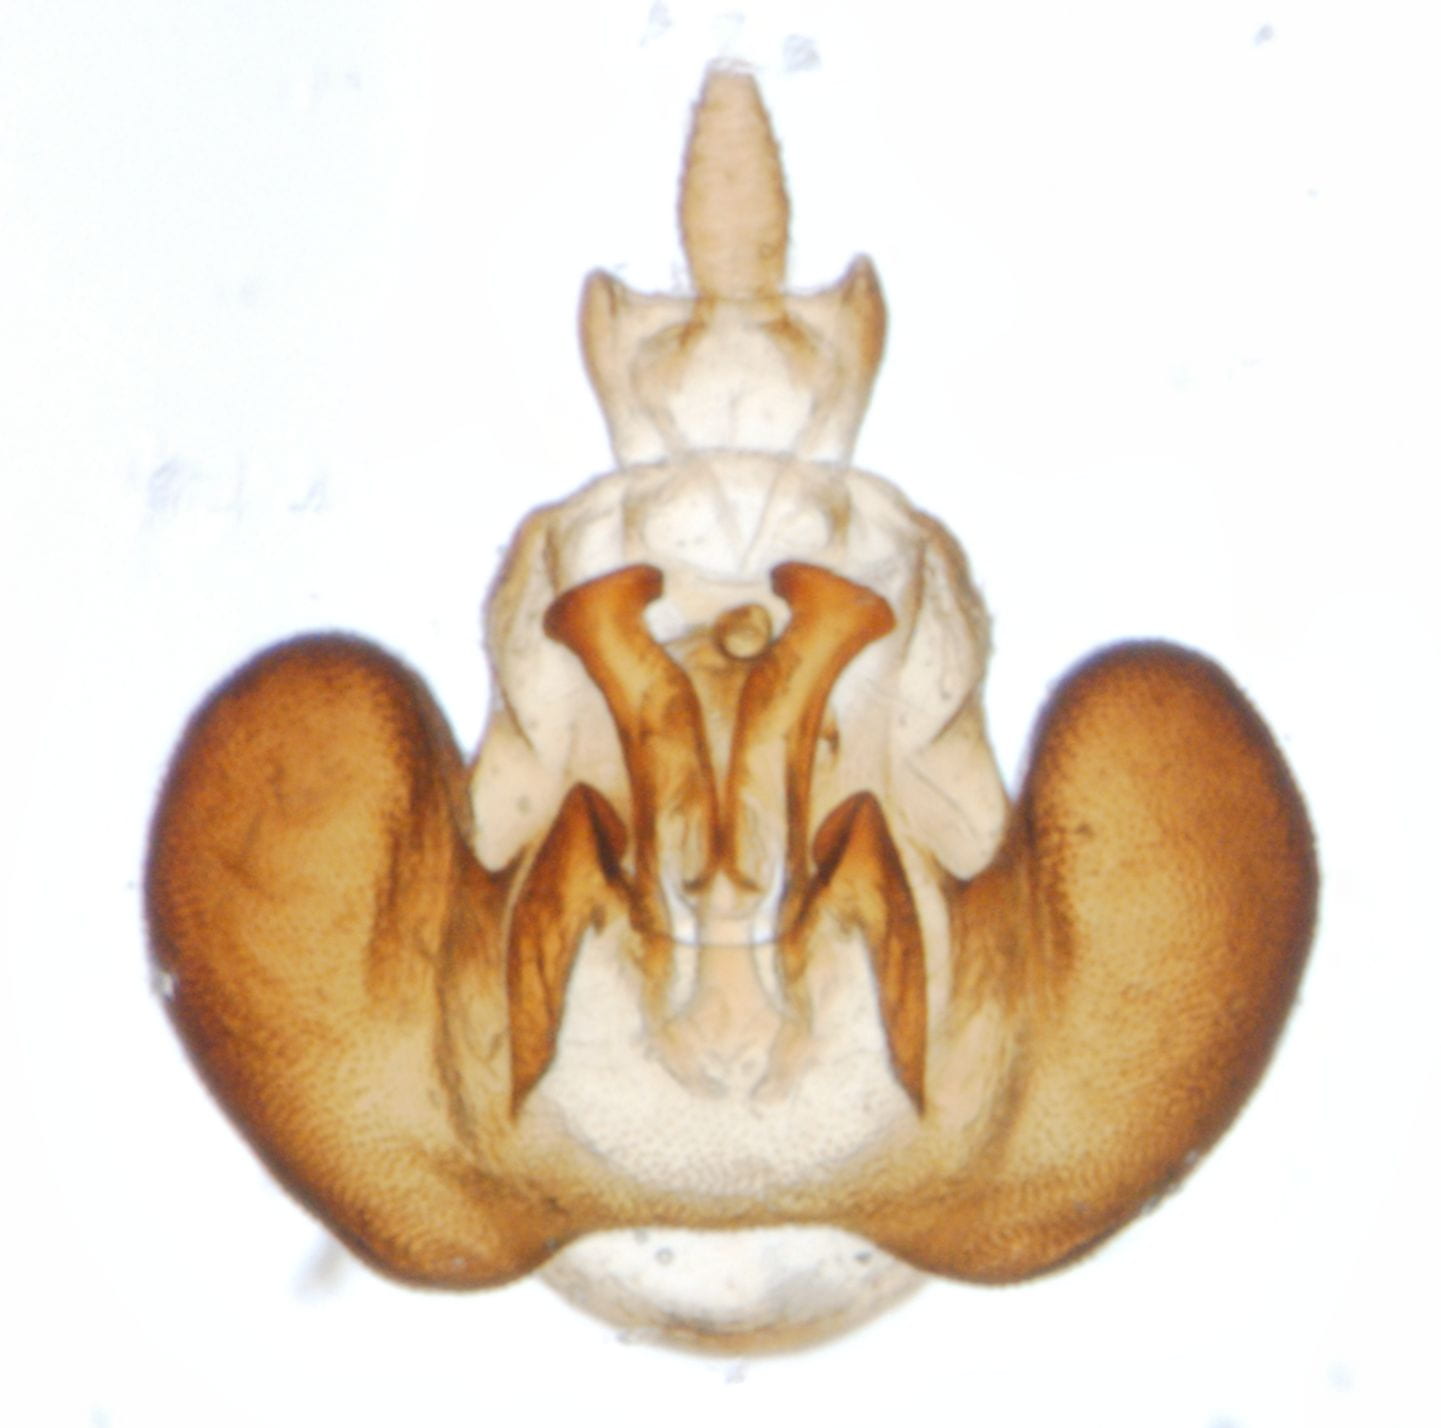 Megamelus paleatus